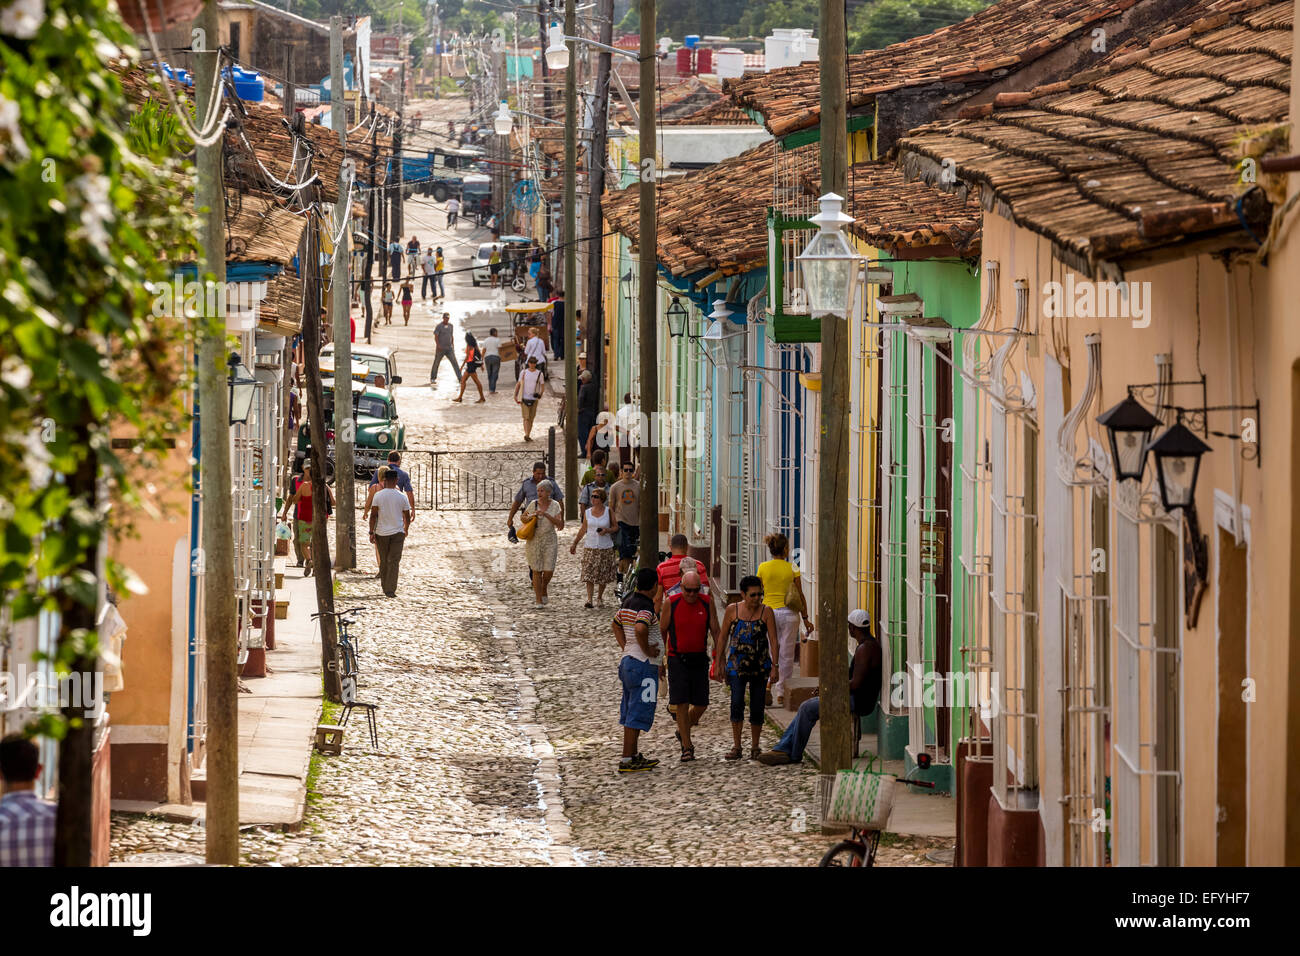 Scène de rue, vieille ville, Trinidad, la province de Sancti Spiritus, Cuba Banque D'Images